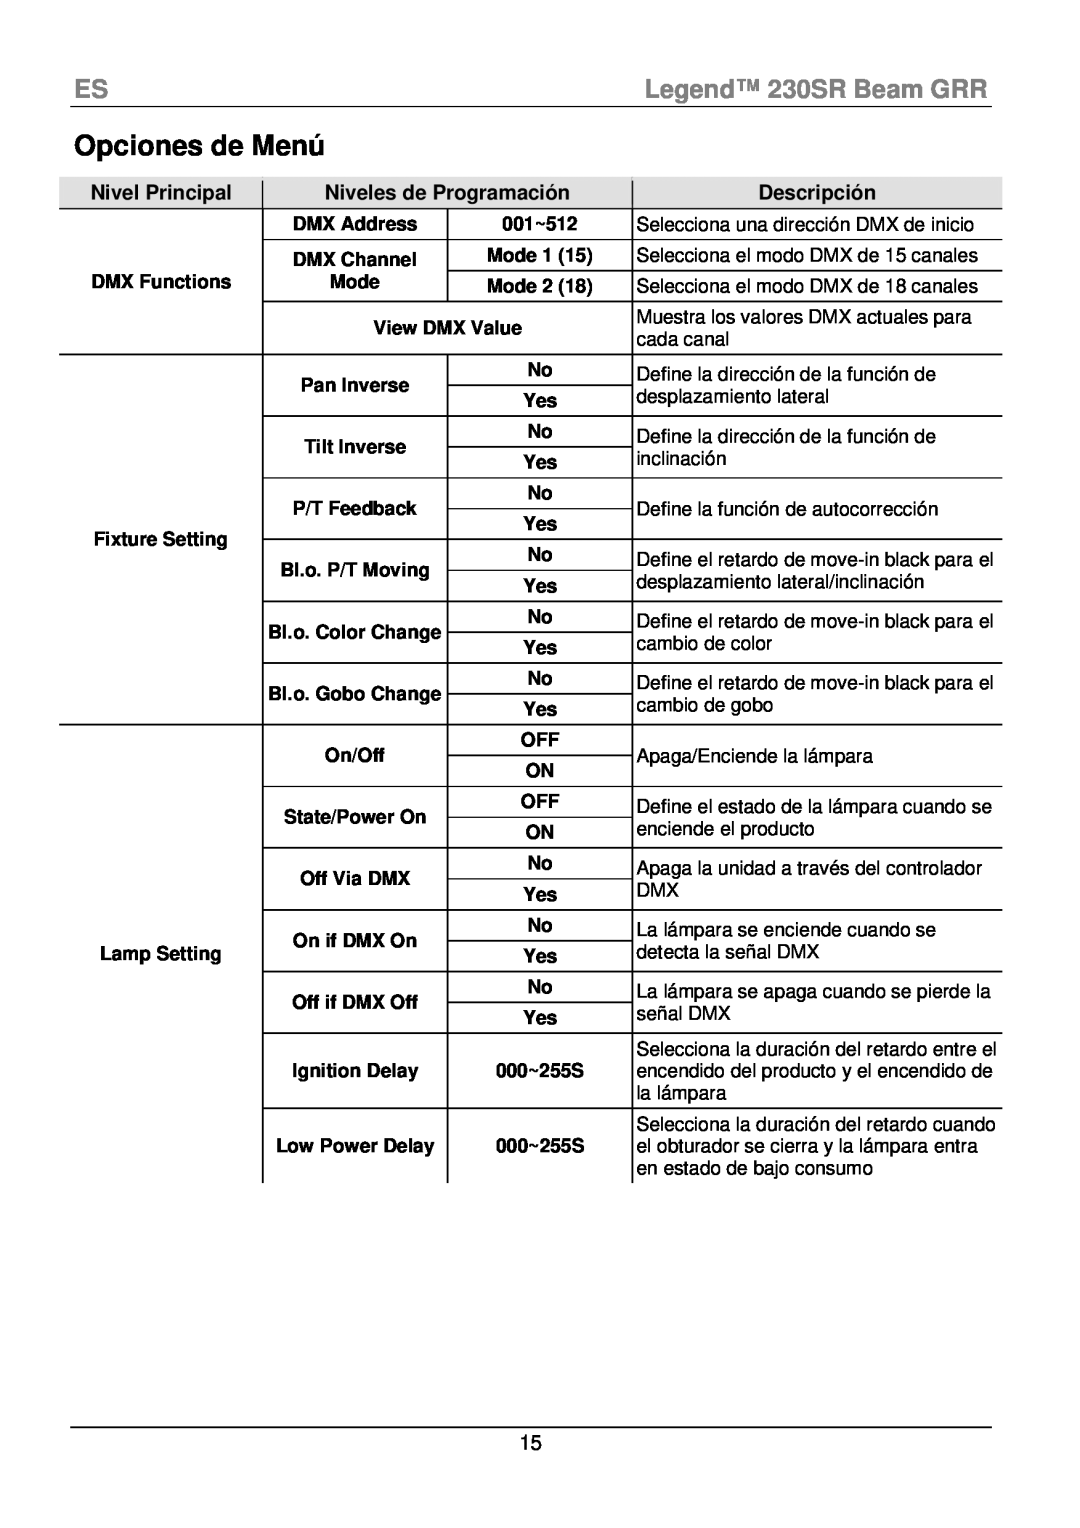 Chauvet manual Opciones de Menú, ESLegend 230SR Beam GRR, Descripción 